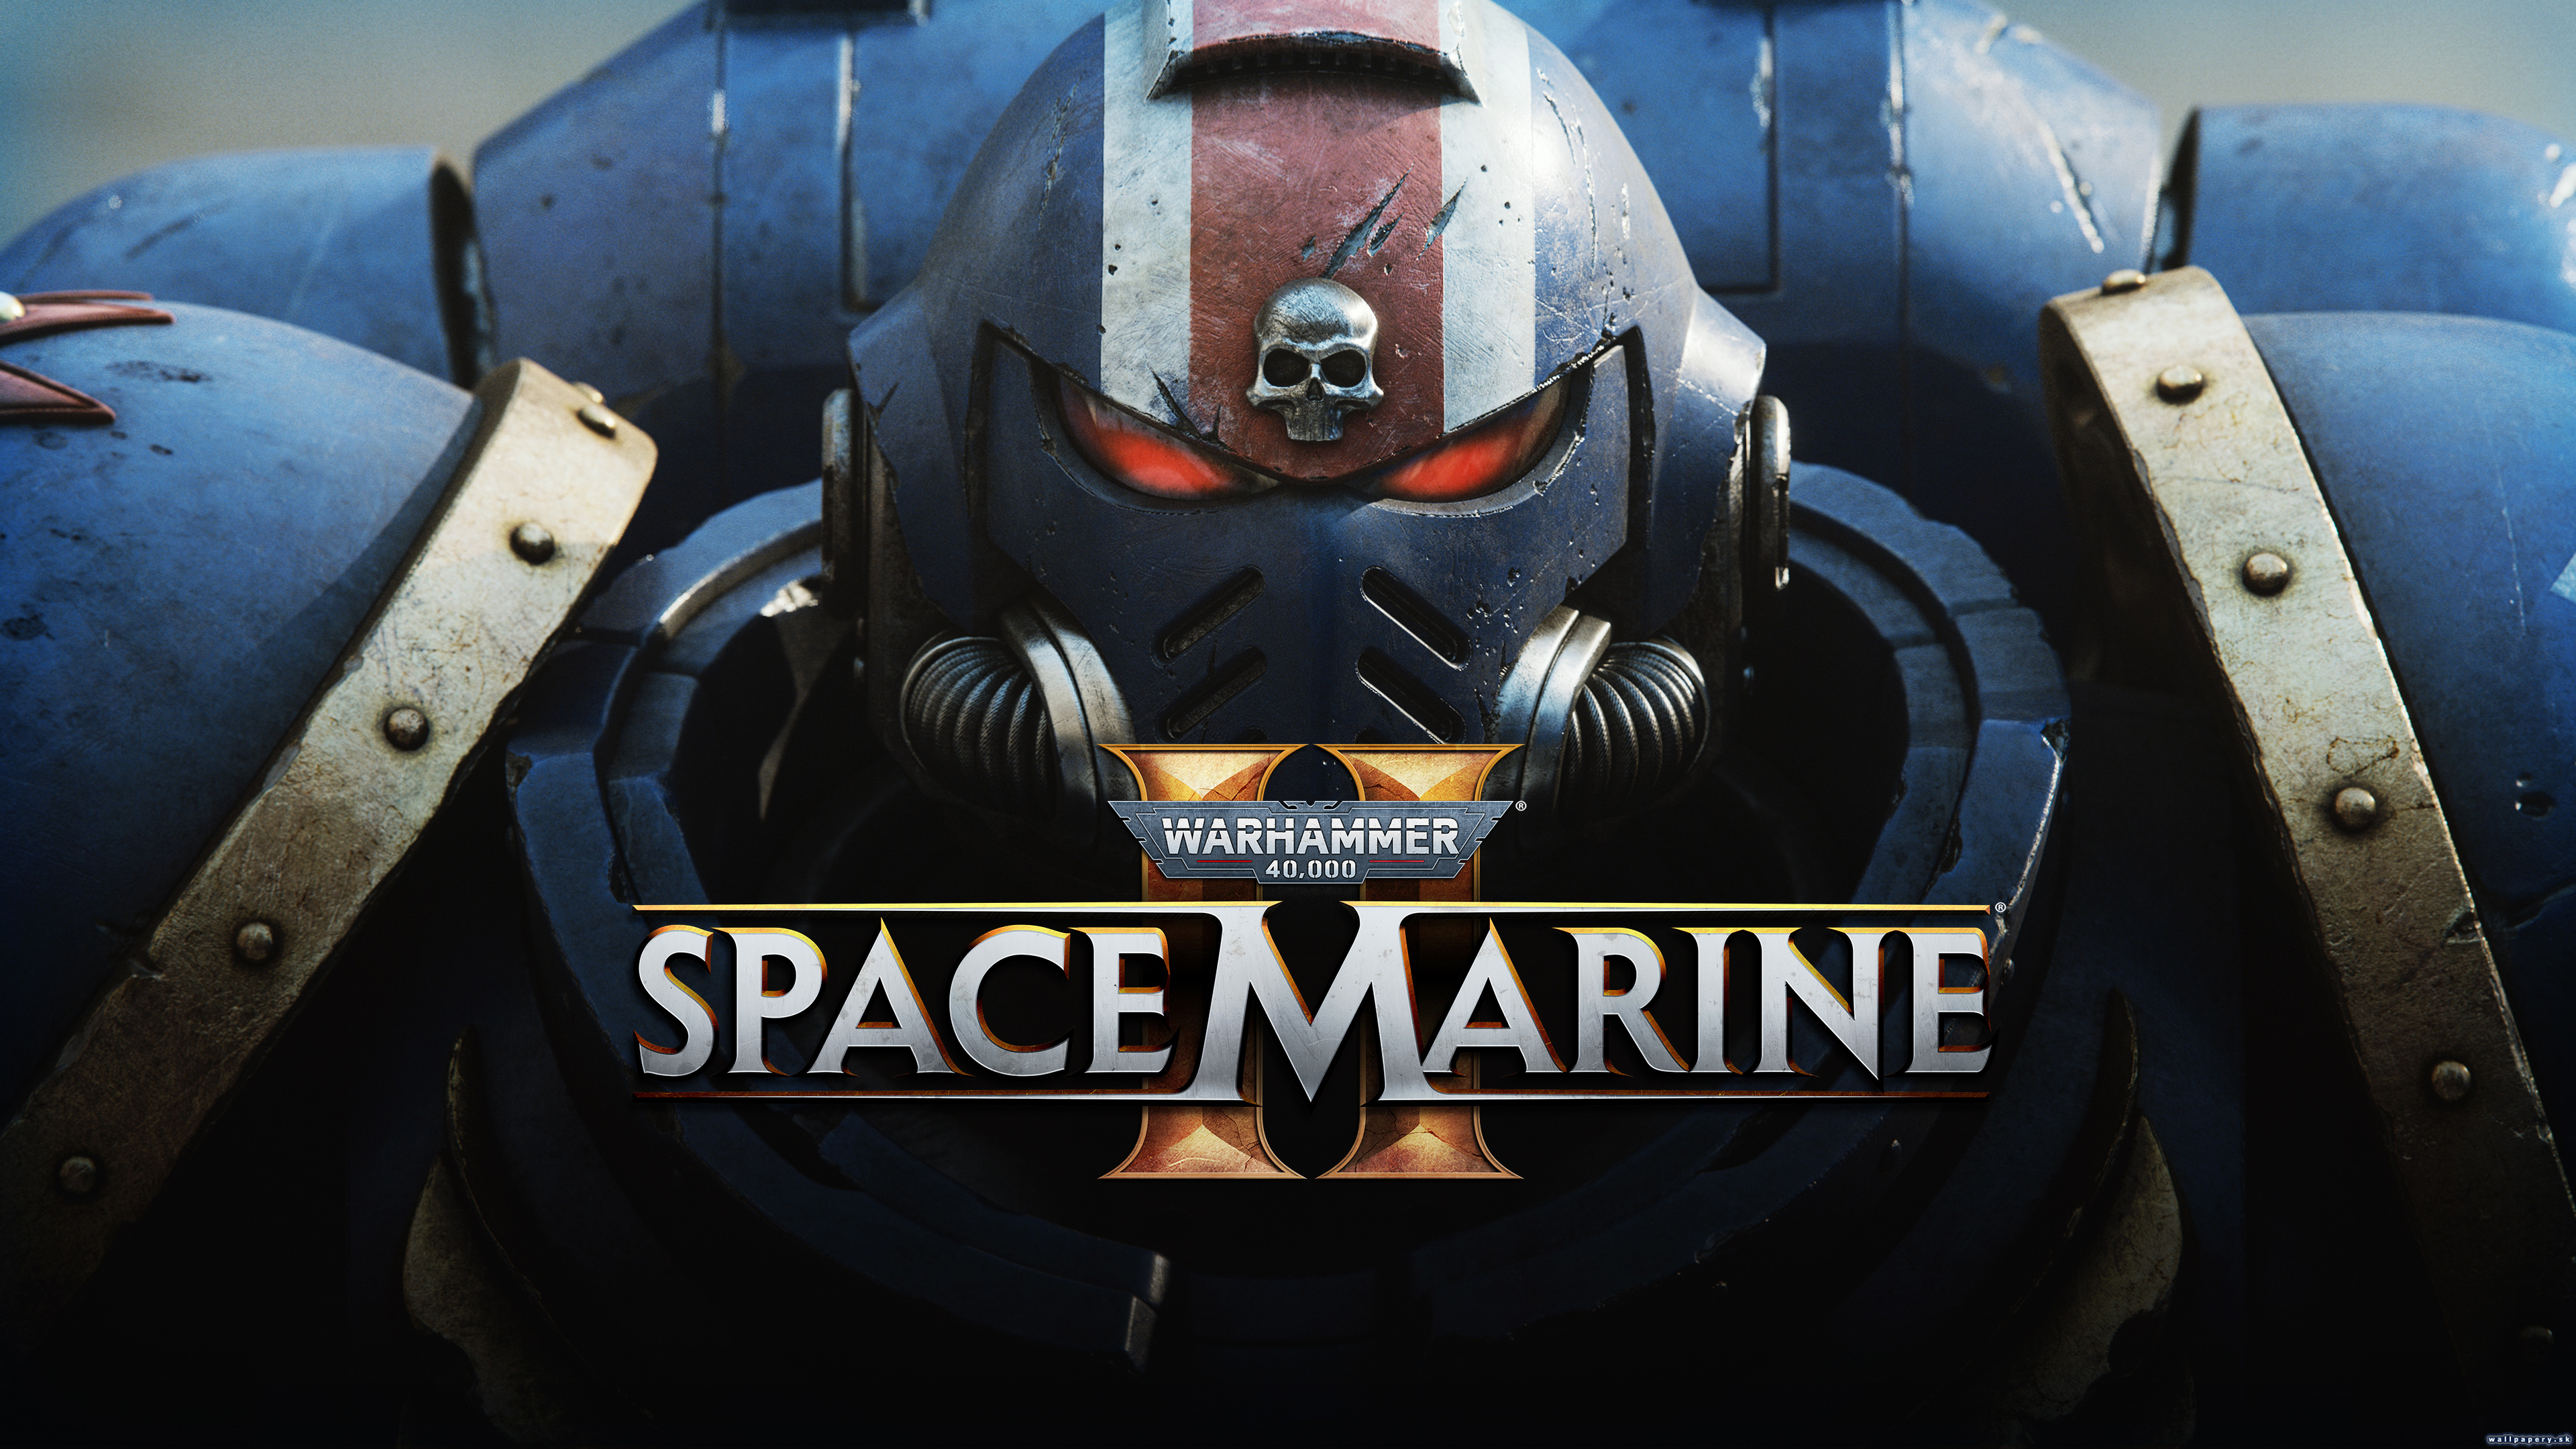 Warhammer 40,000: Space Marine 2 - wallpaper 1